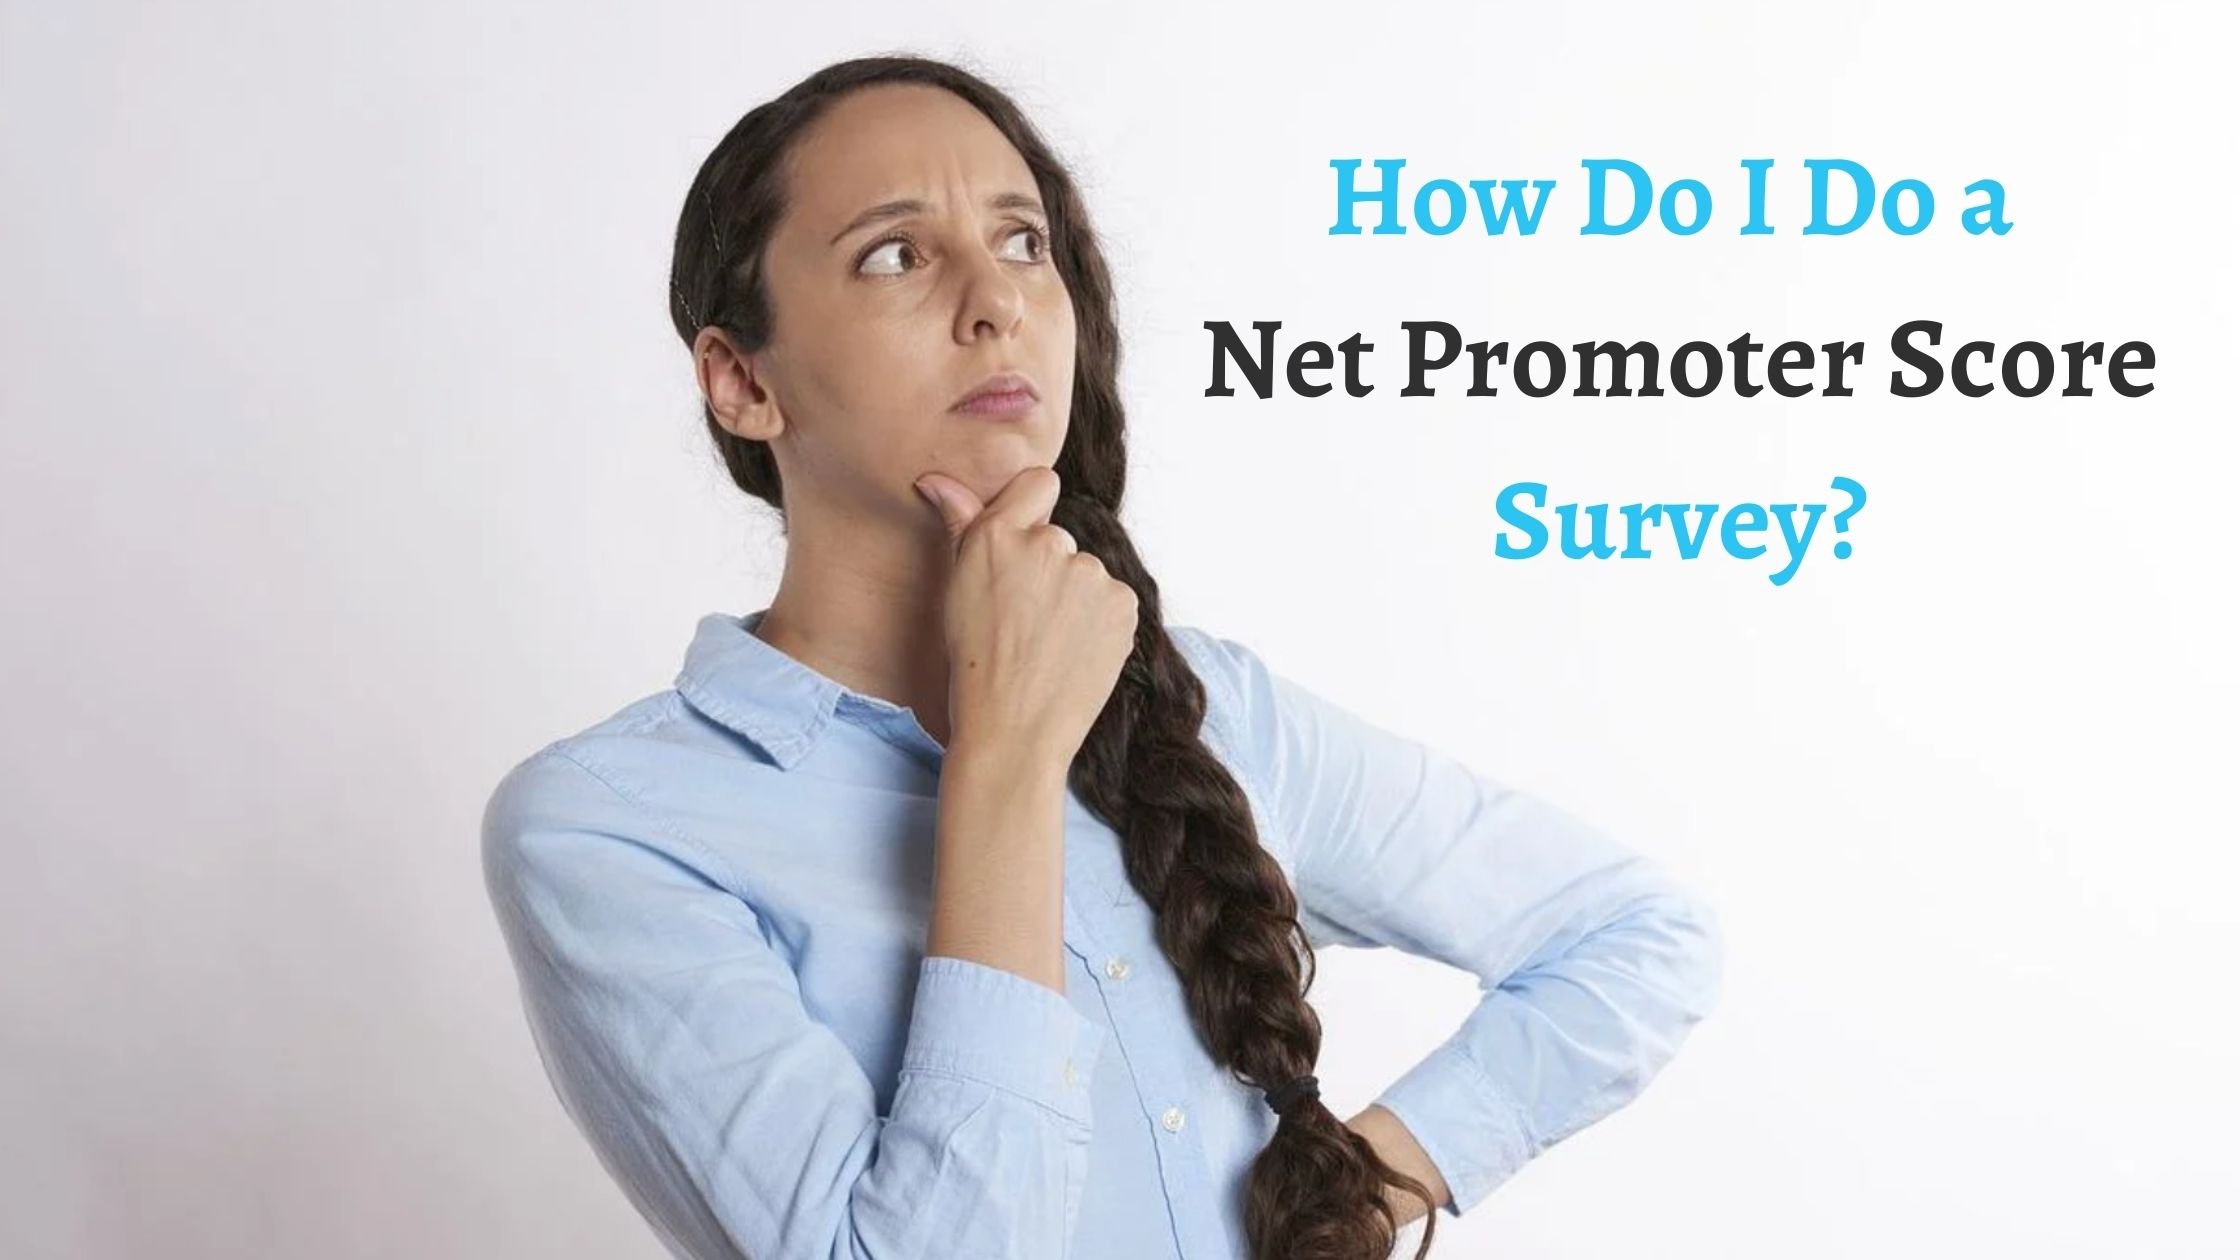 Measuring Net Promoter Score (NPS) in Intercom